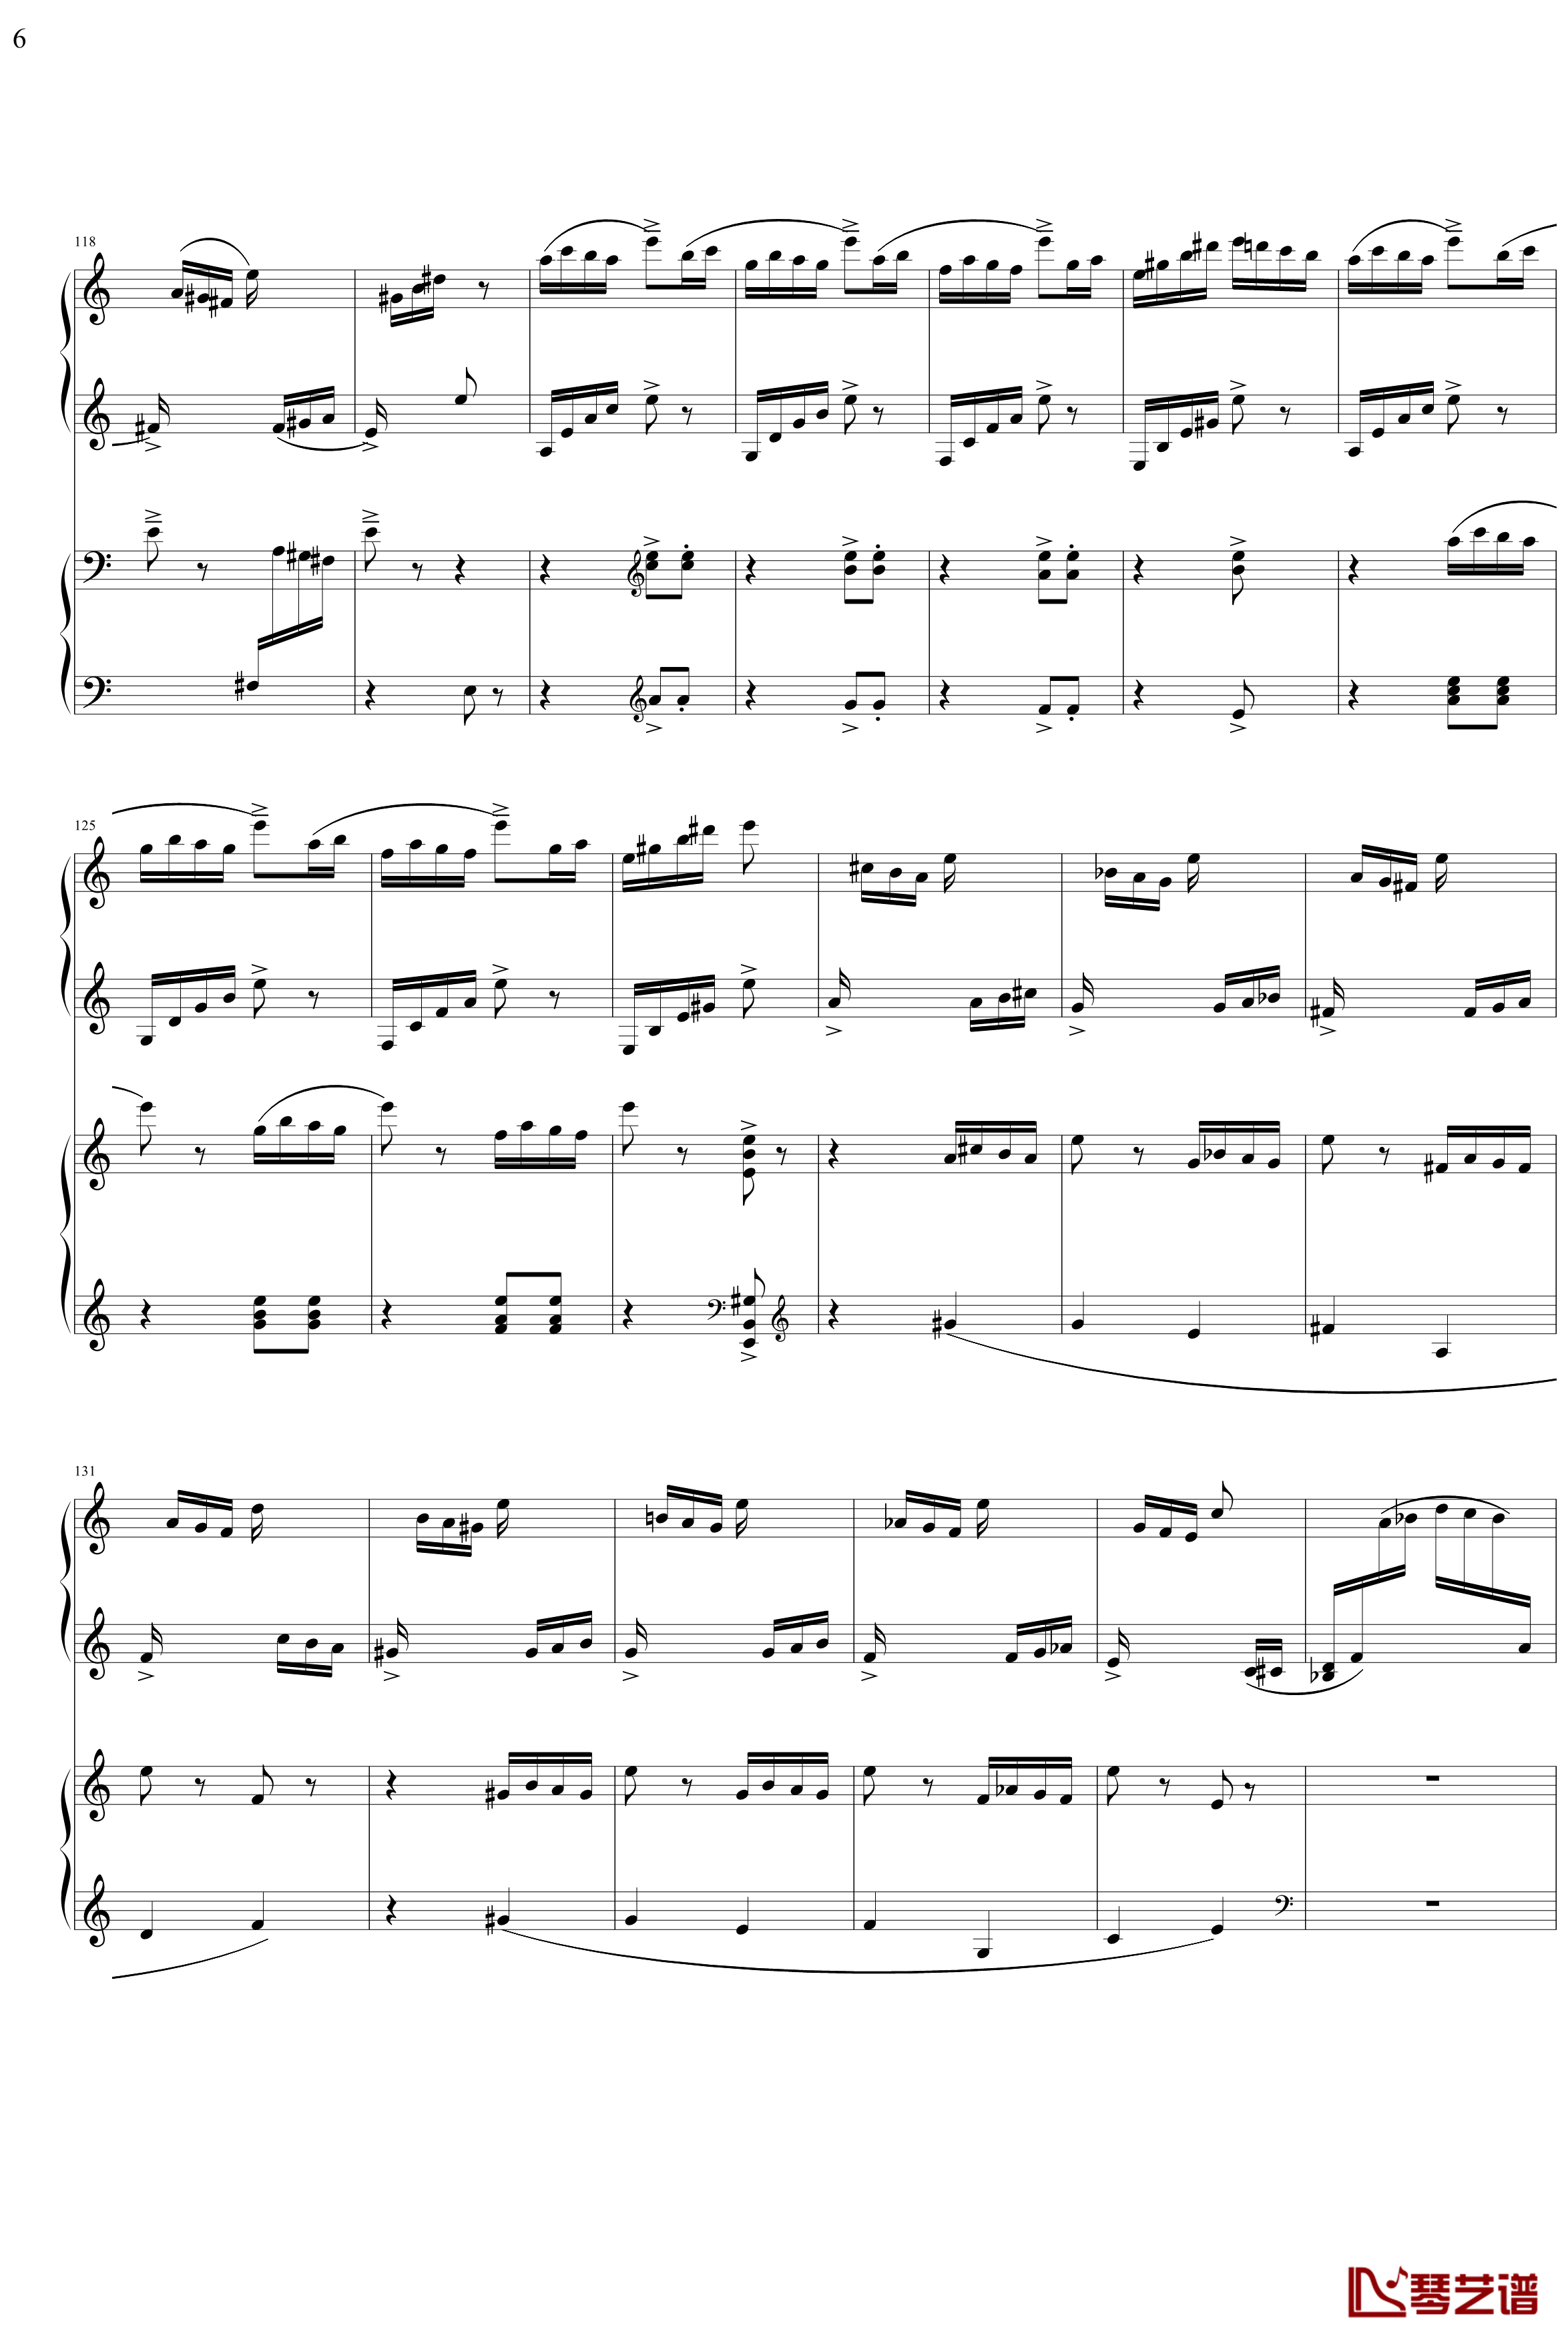 帕格尼主题狂想曲钢琴谱-1~10变奏-拉赫马尼若夫6